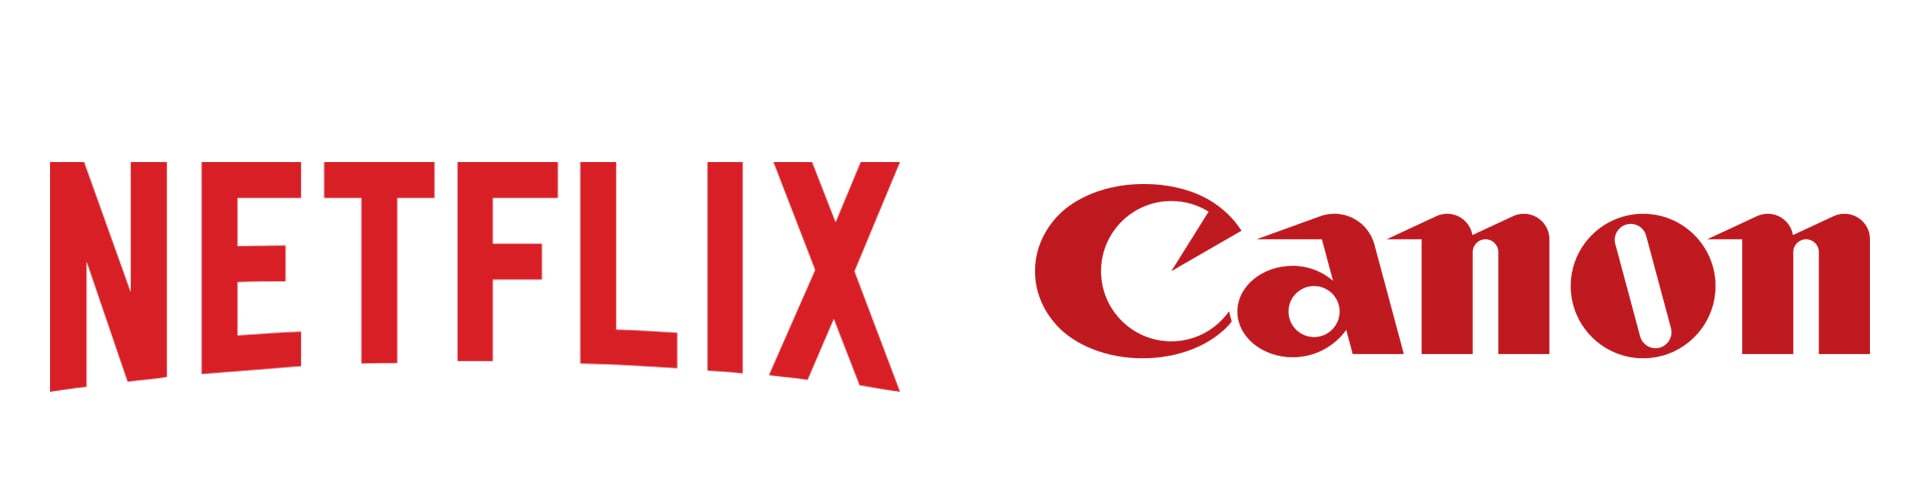 logo-netflix-canon